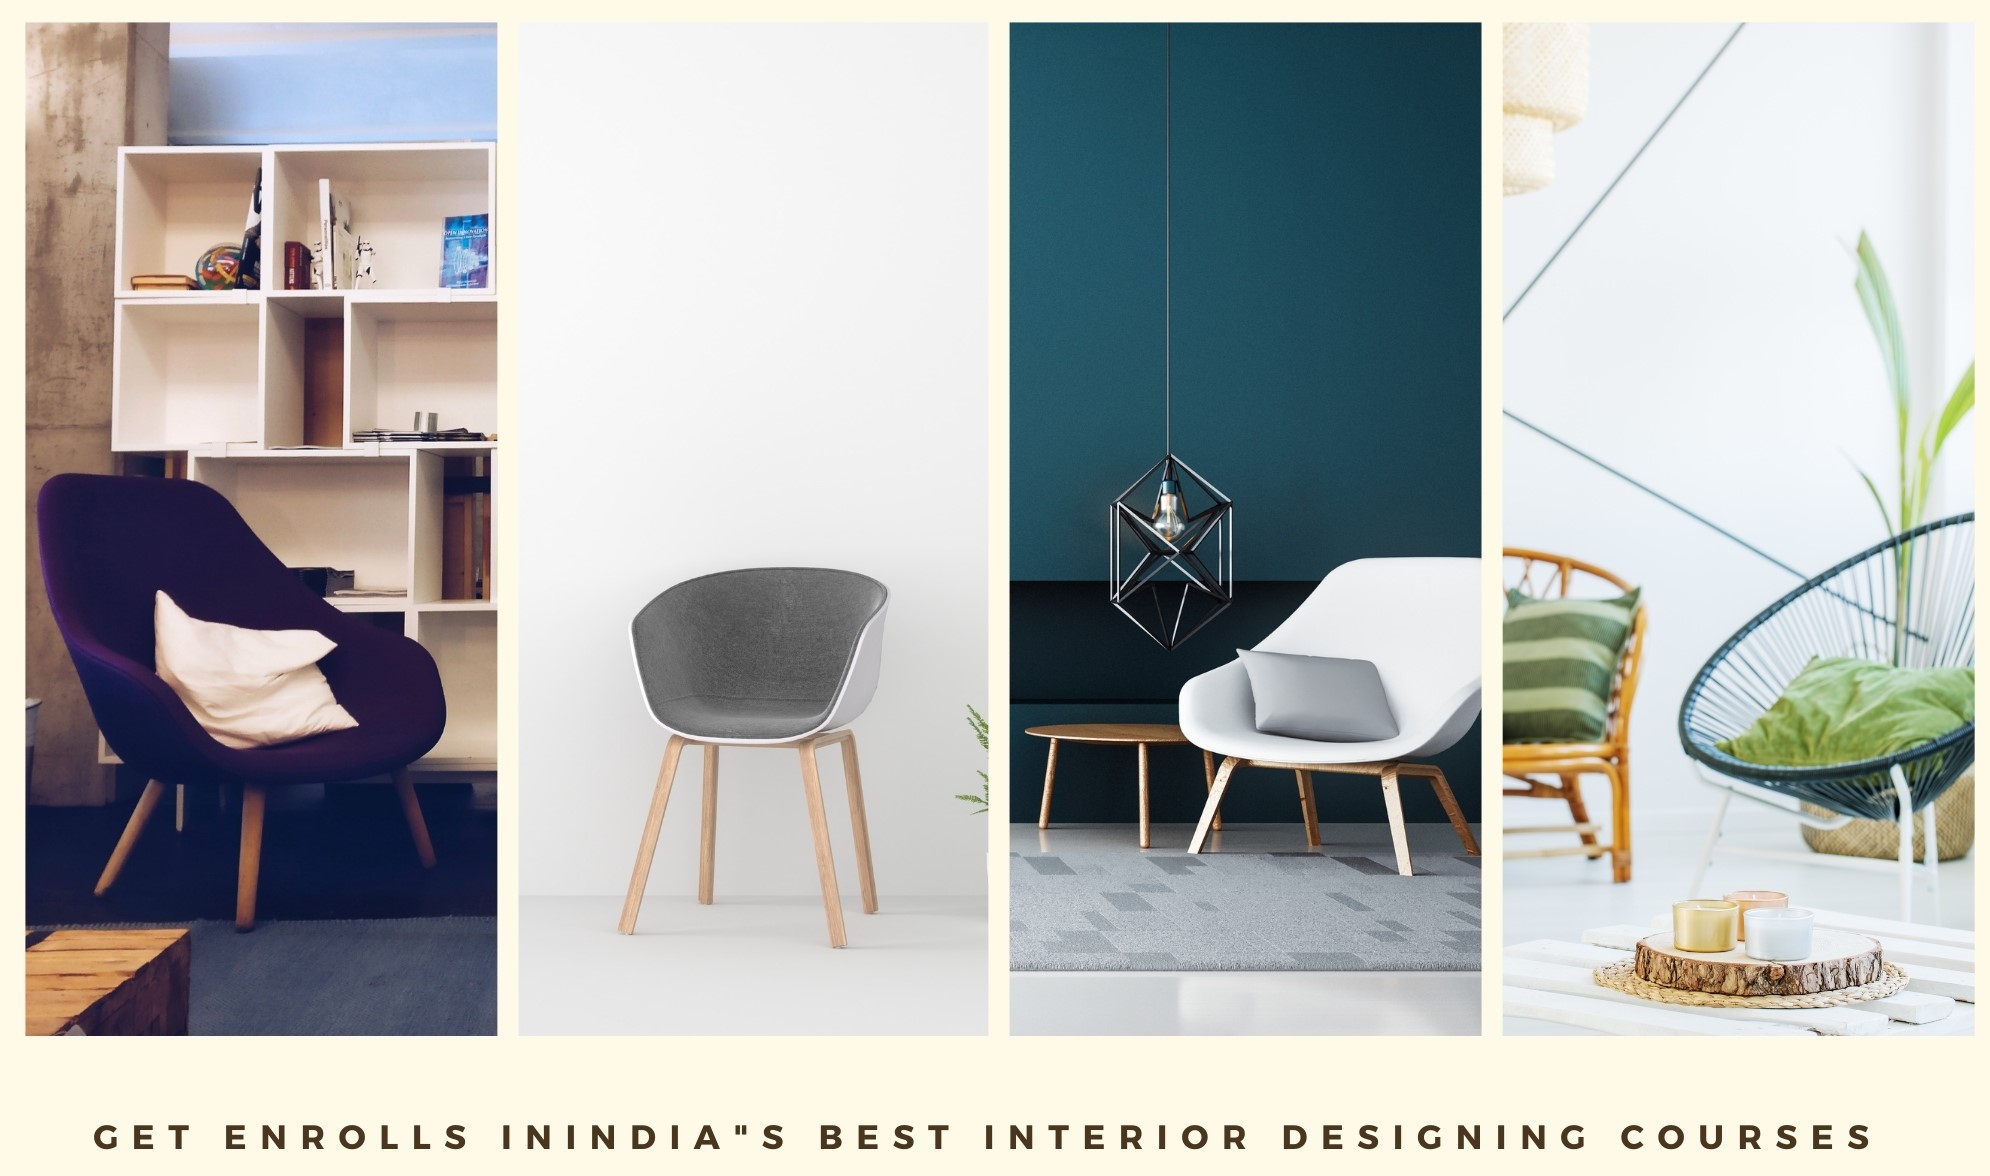 The true scope of an Interior Designing  career in India